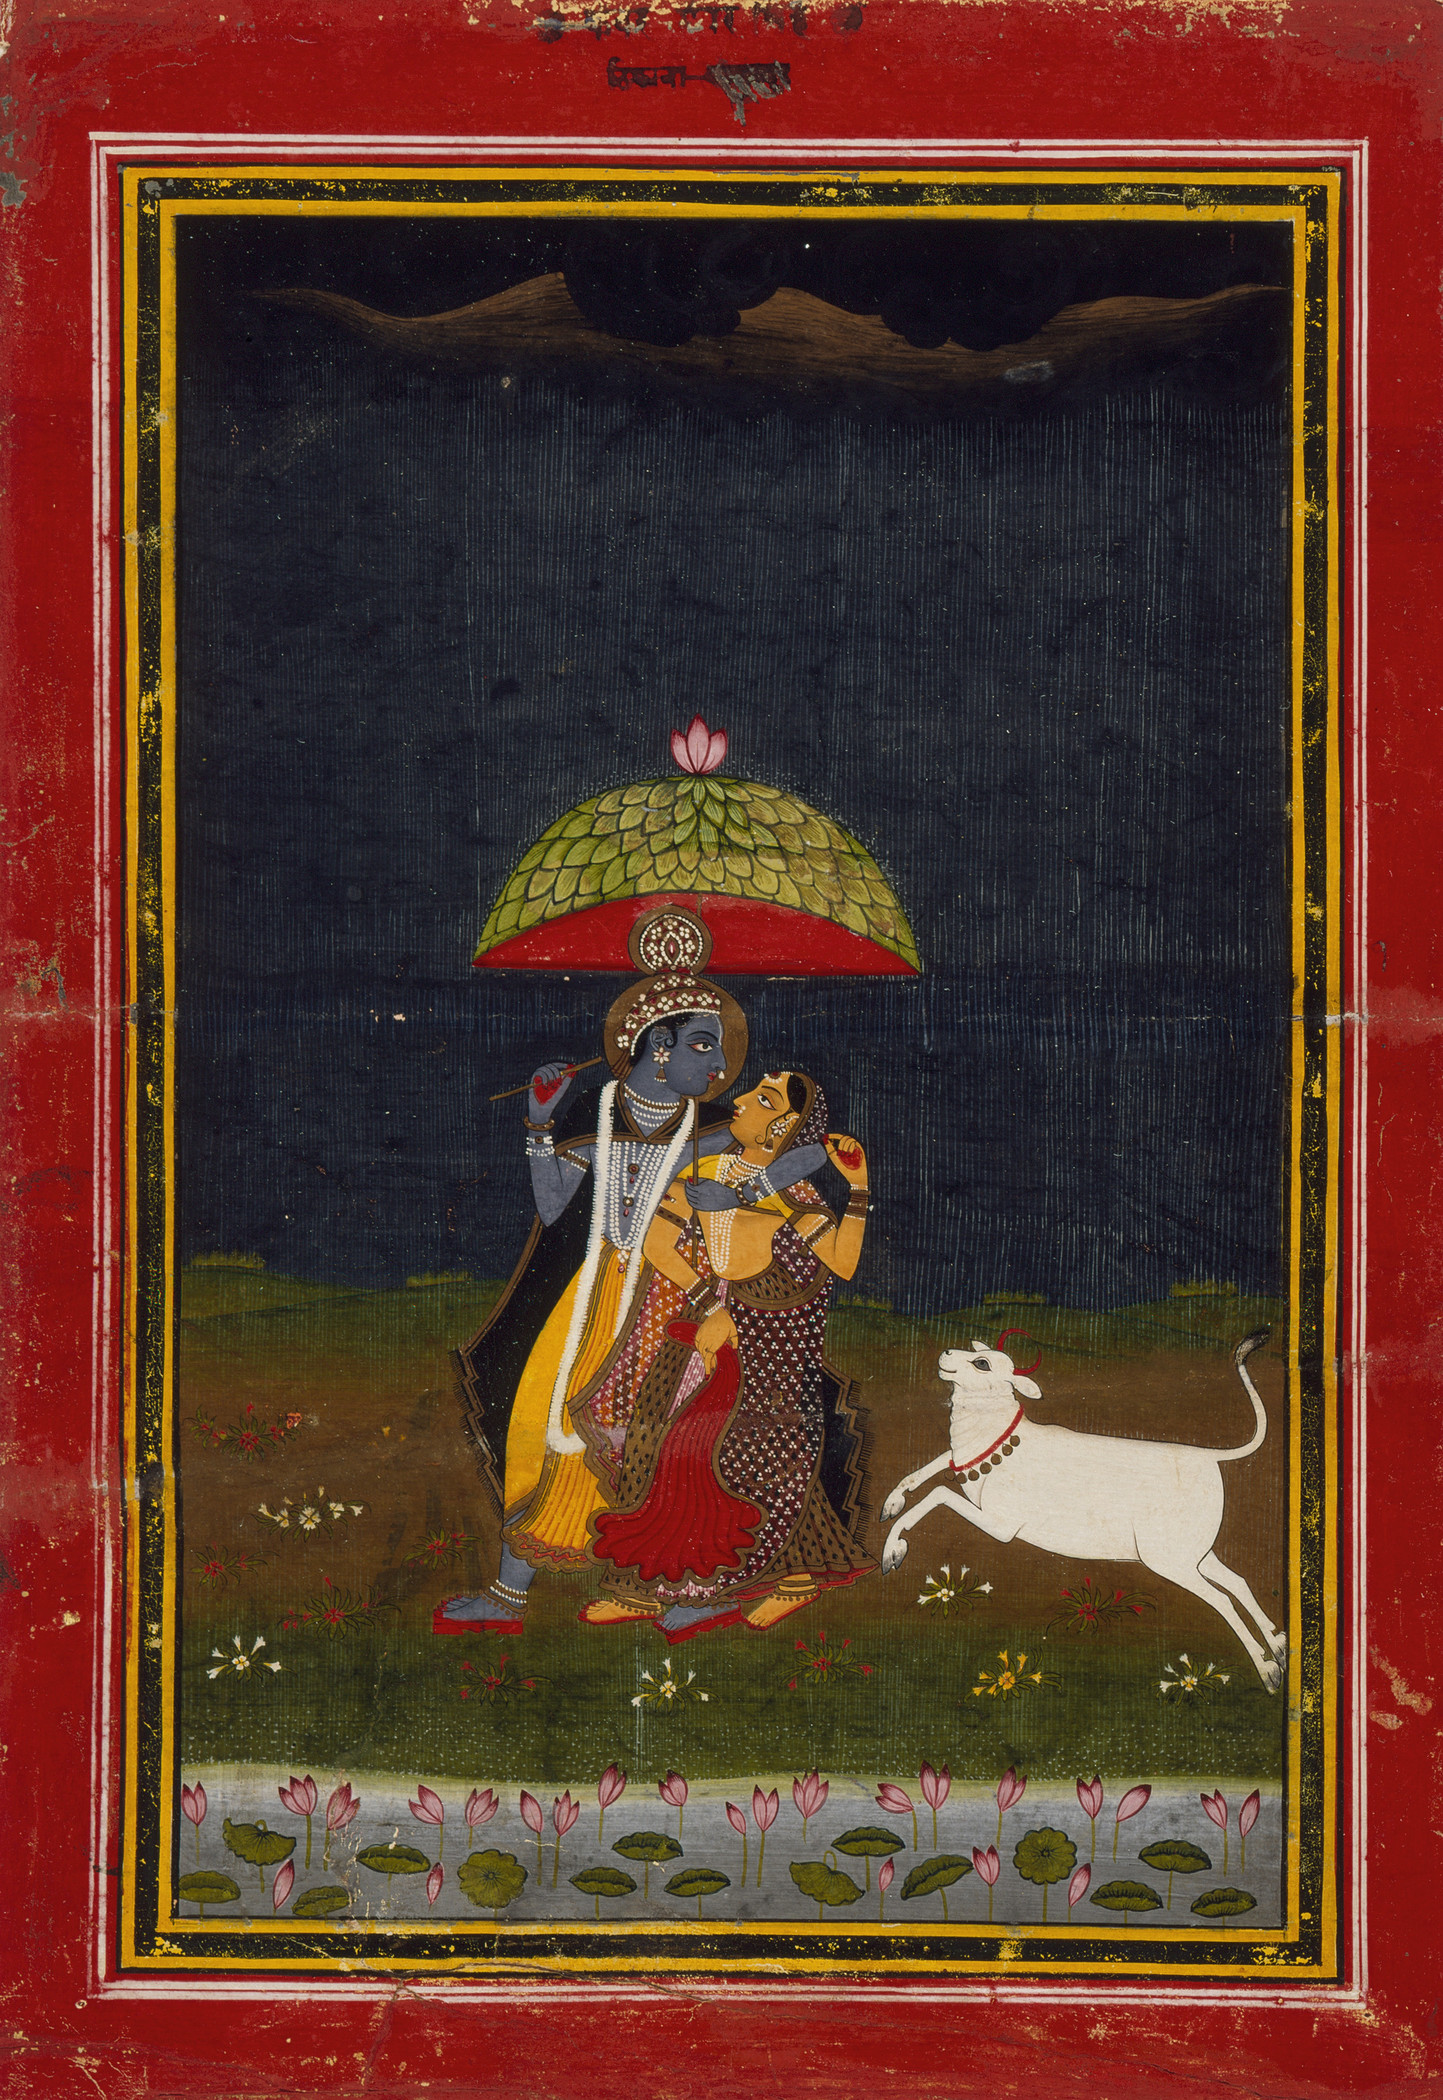 Krishna und Radha Schlendern  im Regen by Unbekannter Künstler - circa 1775 - 22,54 x 14,6 cm LACMA, Los Angeles County Museum of Art